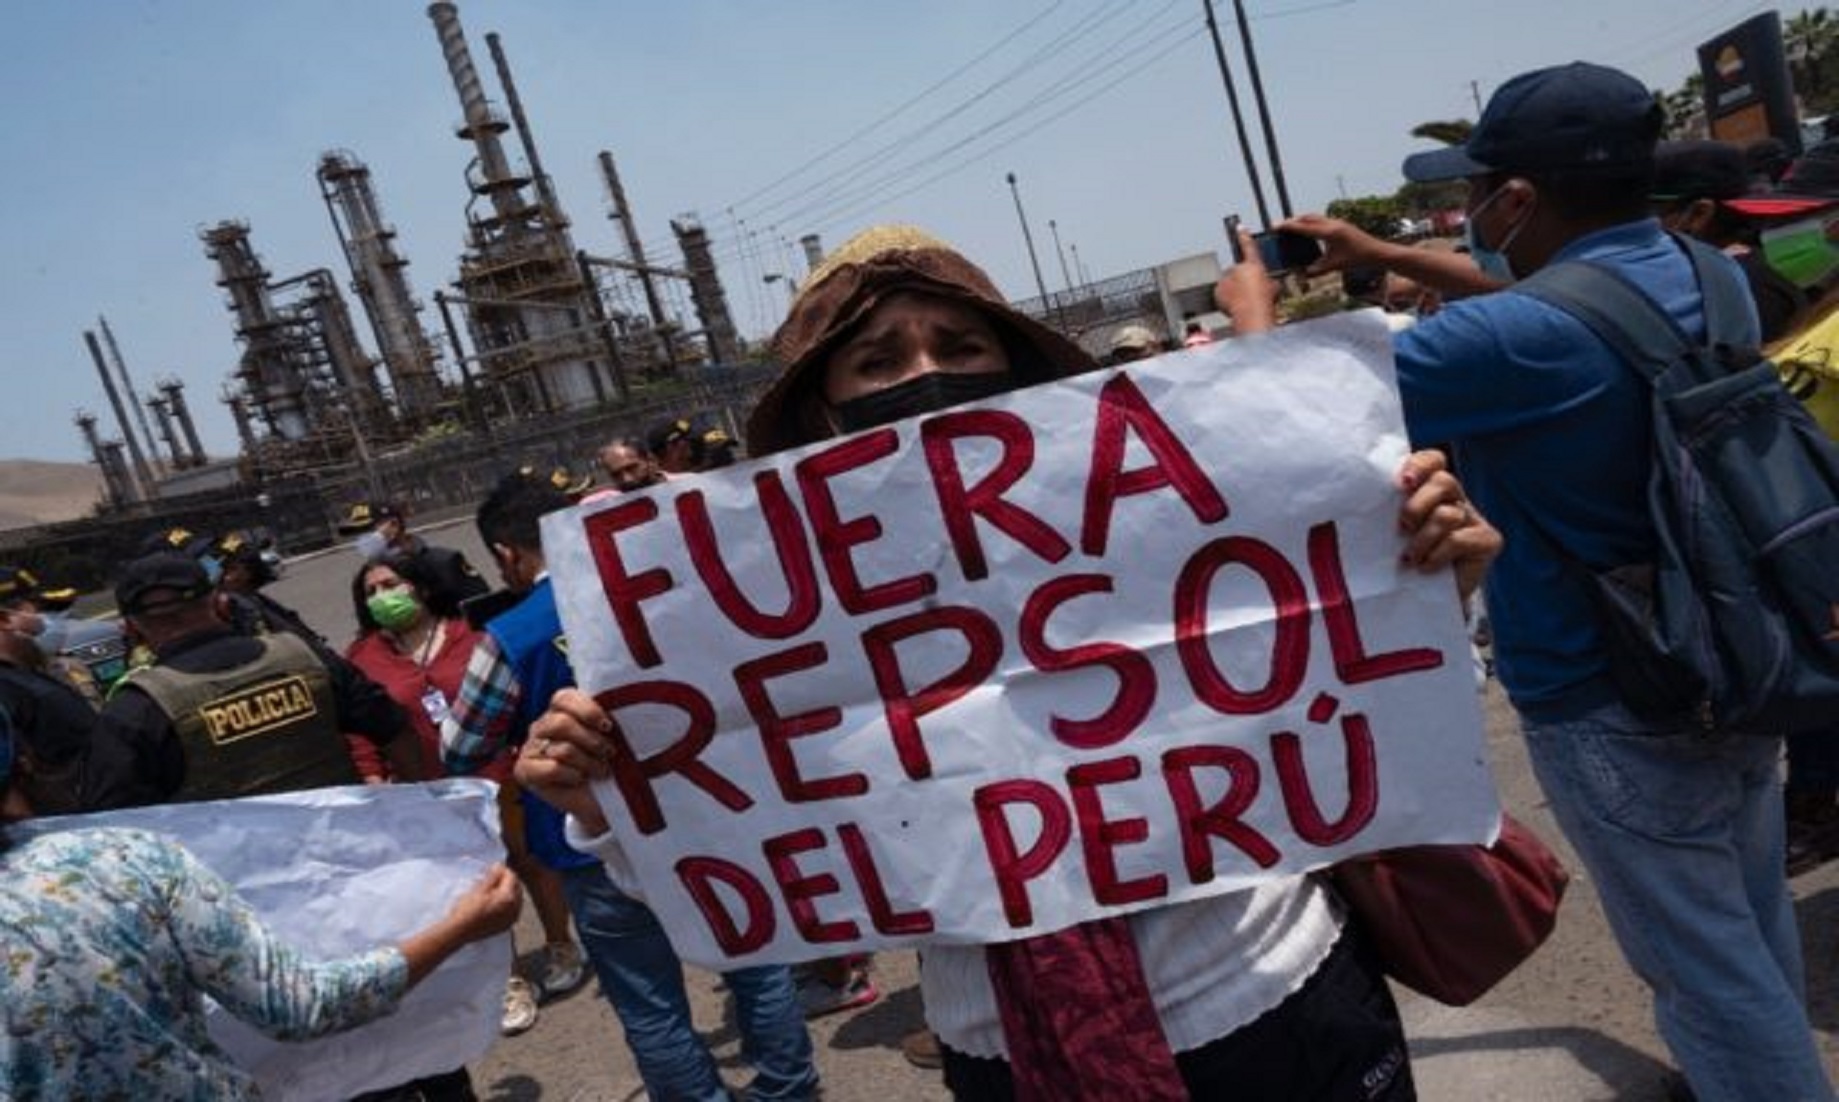 Peru Reports New Oil Spill Off Its Coast